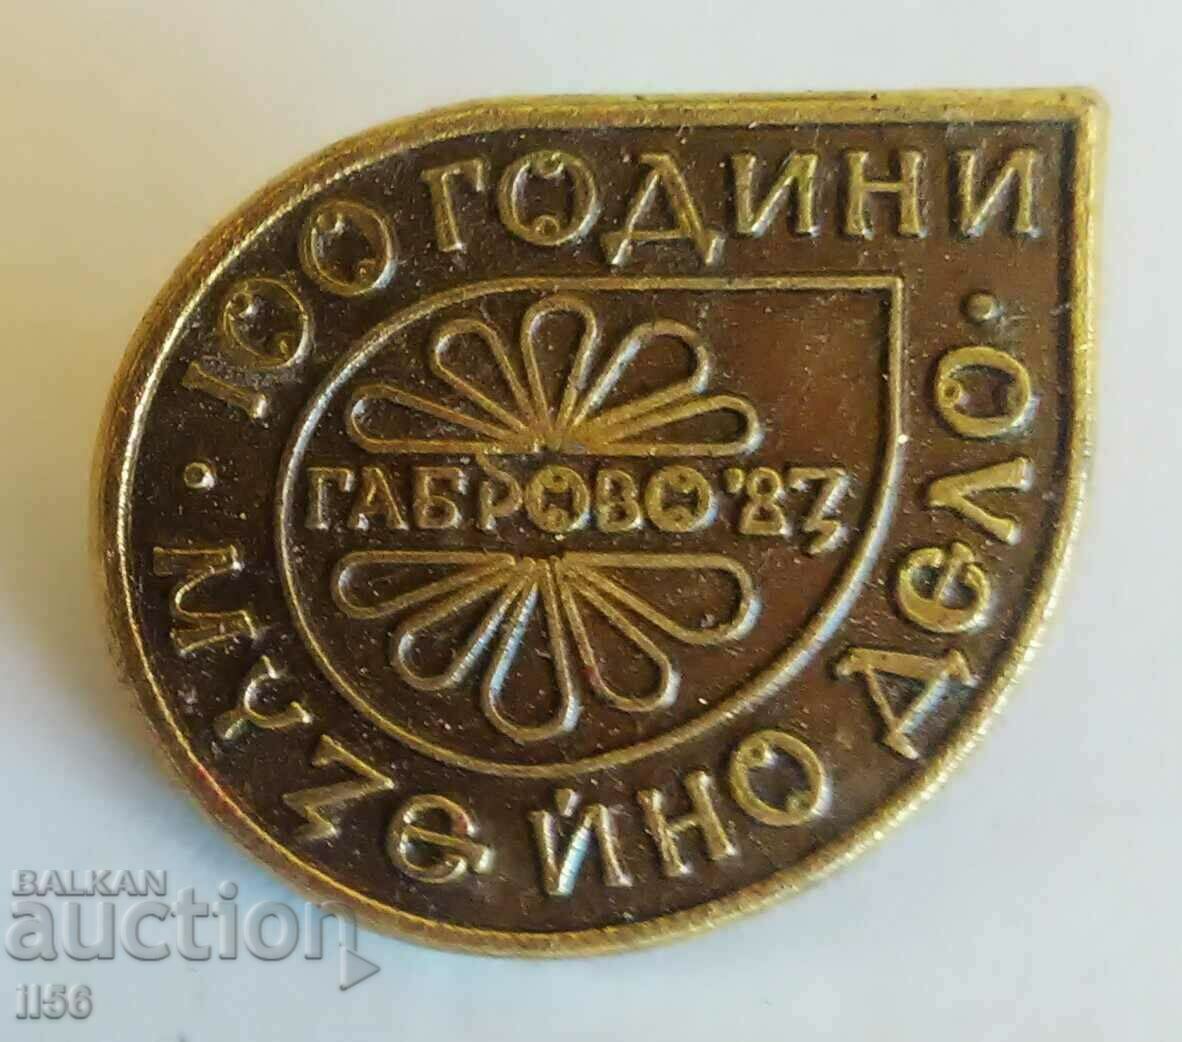 Σήμα - 100 χρόνια μουσειακής εργασίας - Gabrovo